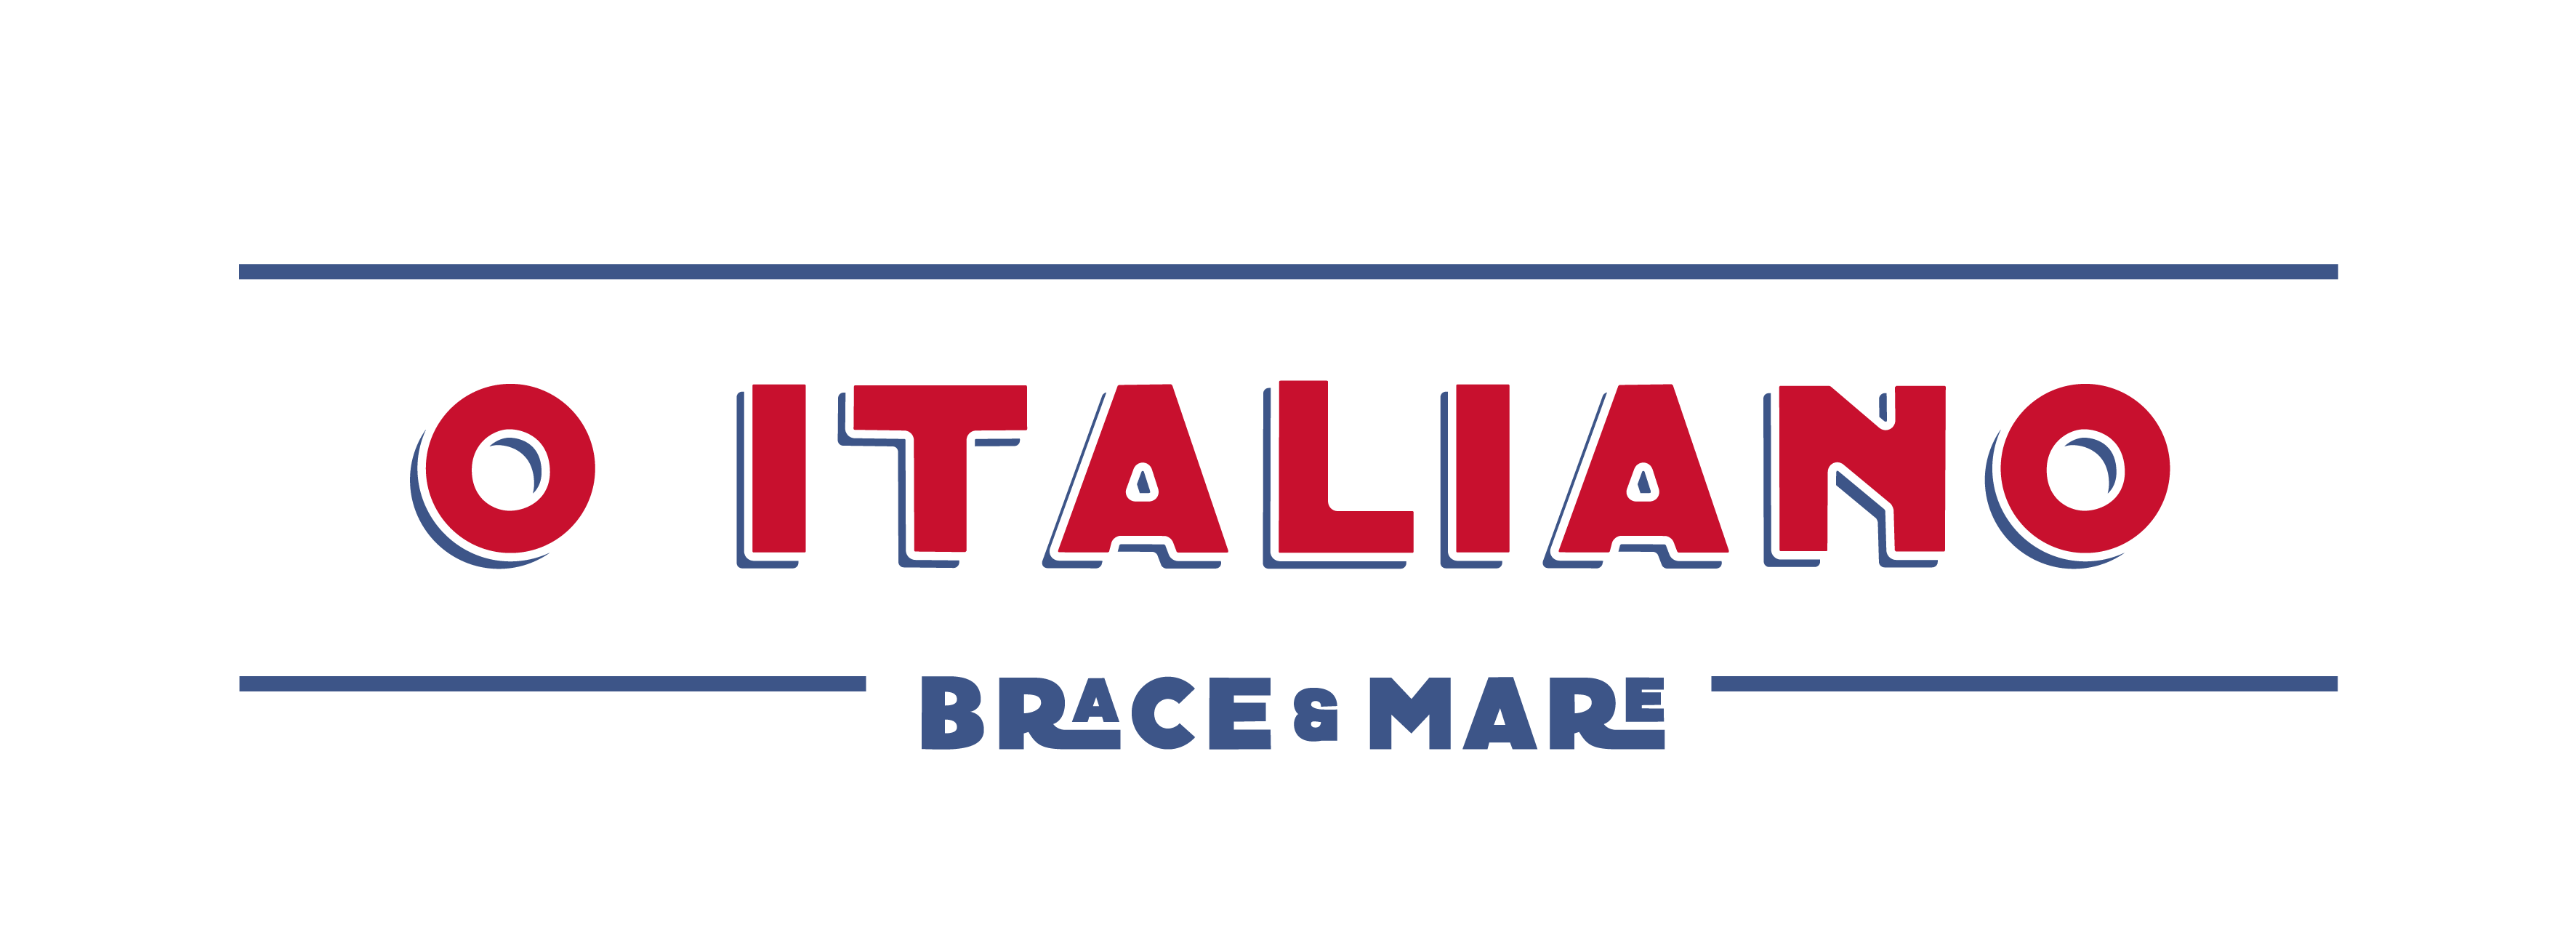 O Italiano